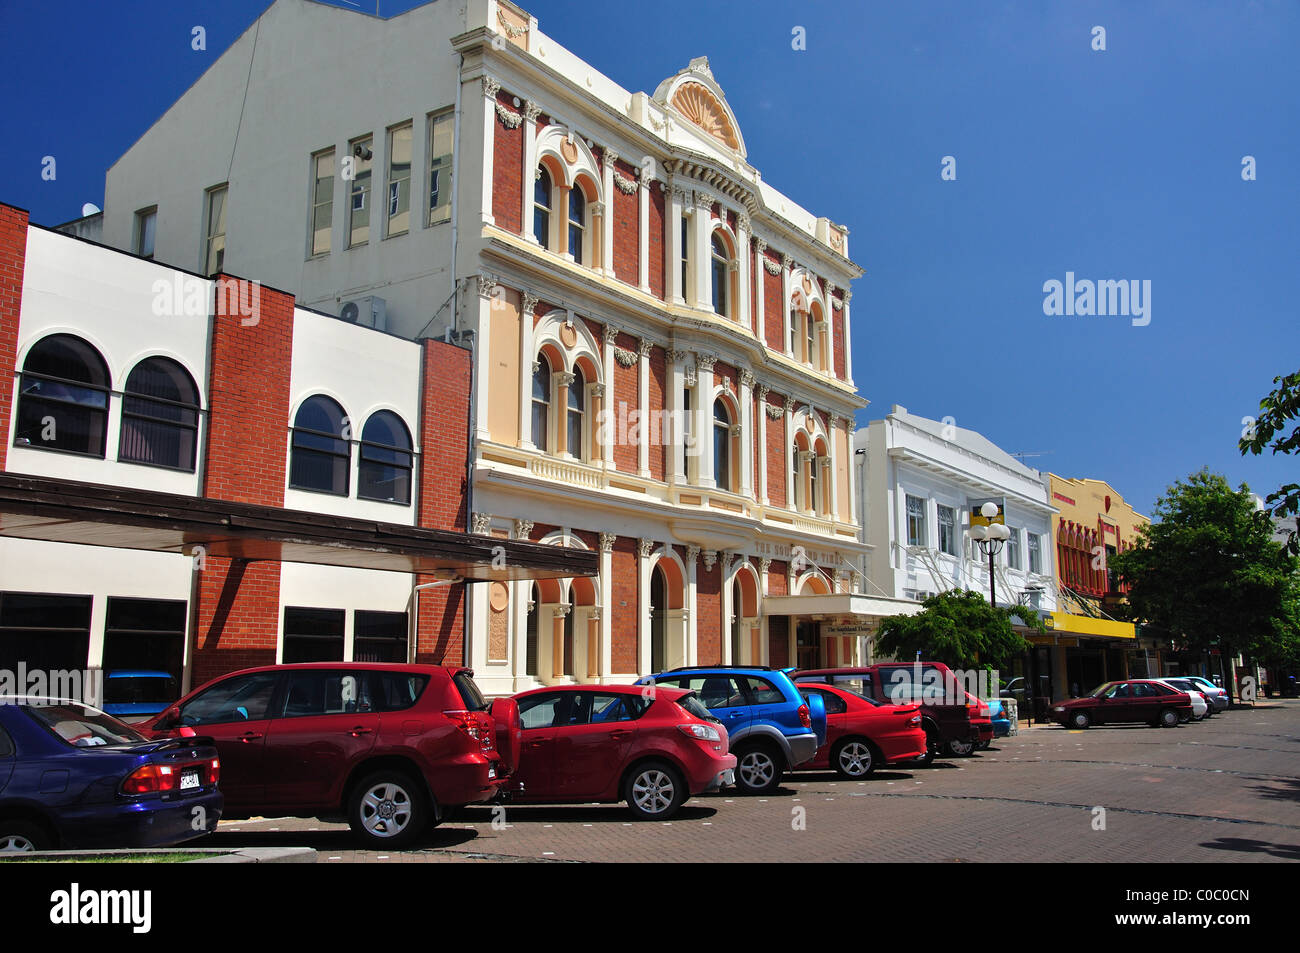 L'architecture d'époque, Don Street, Invercargill, Southland, île du Sud, Nouvelle-Zélande Banque D'Images